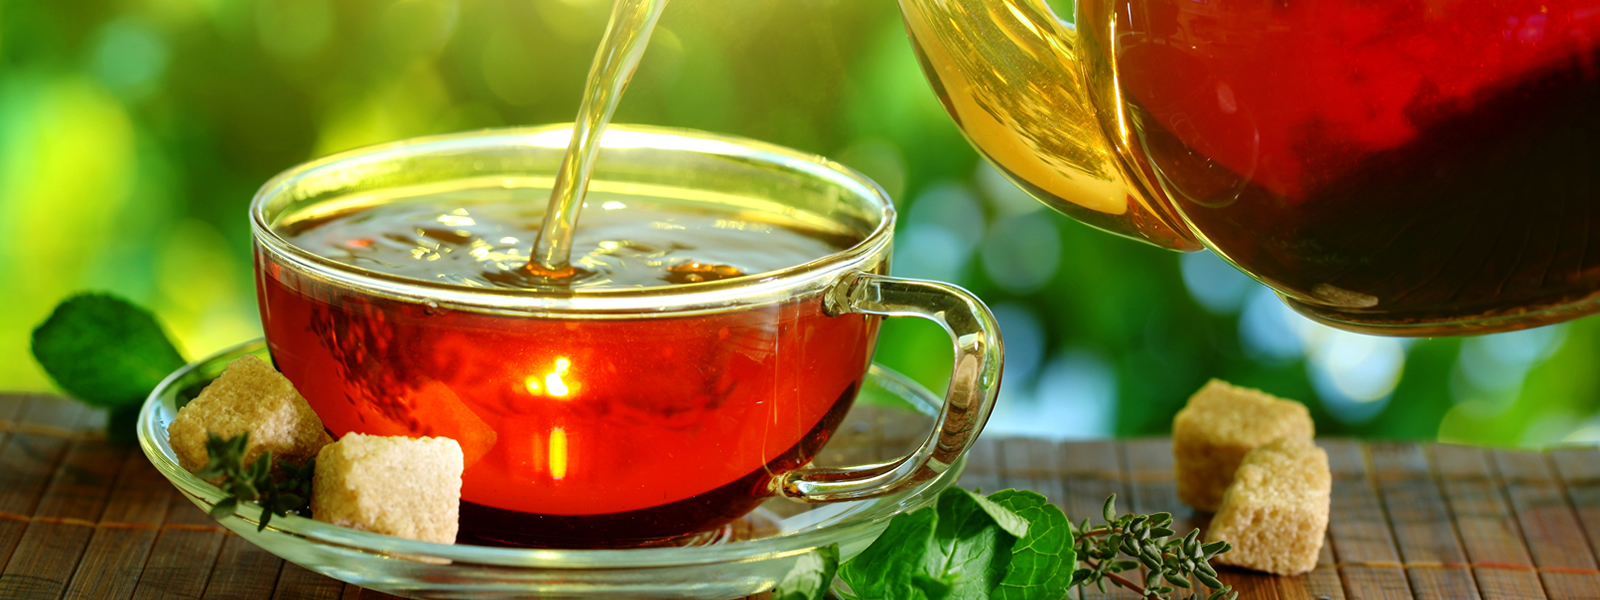 Целебный чай для бани и другие полезные напитки